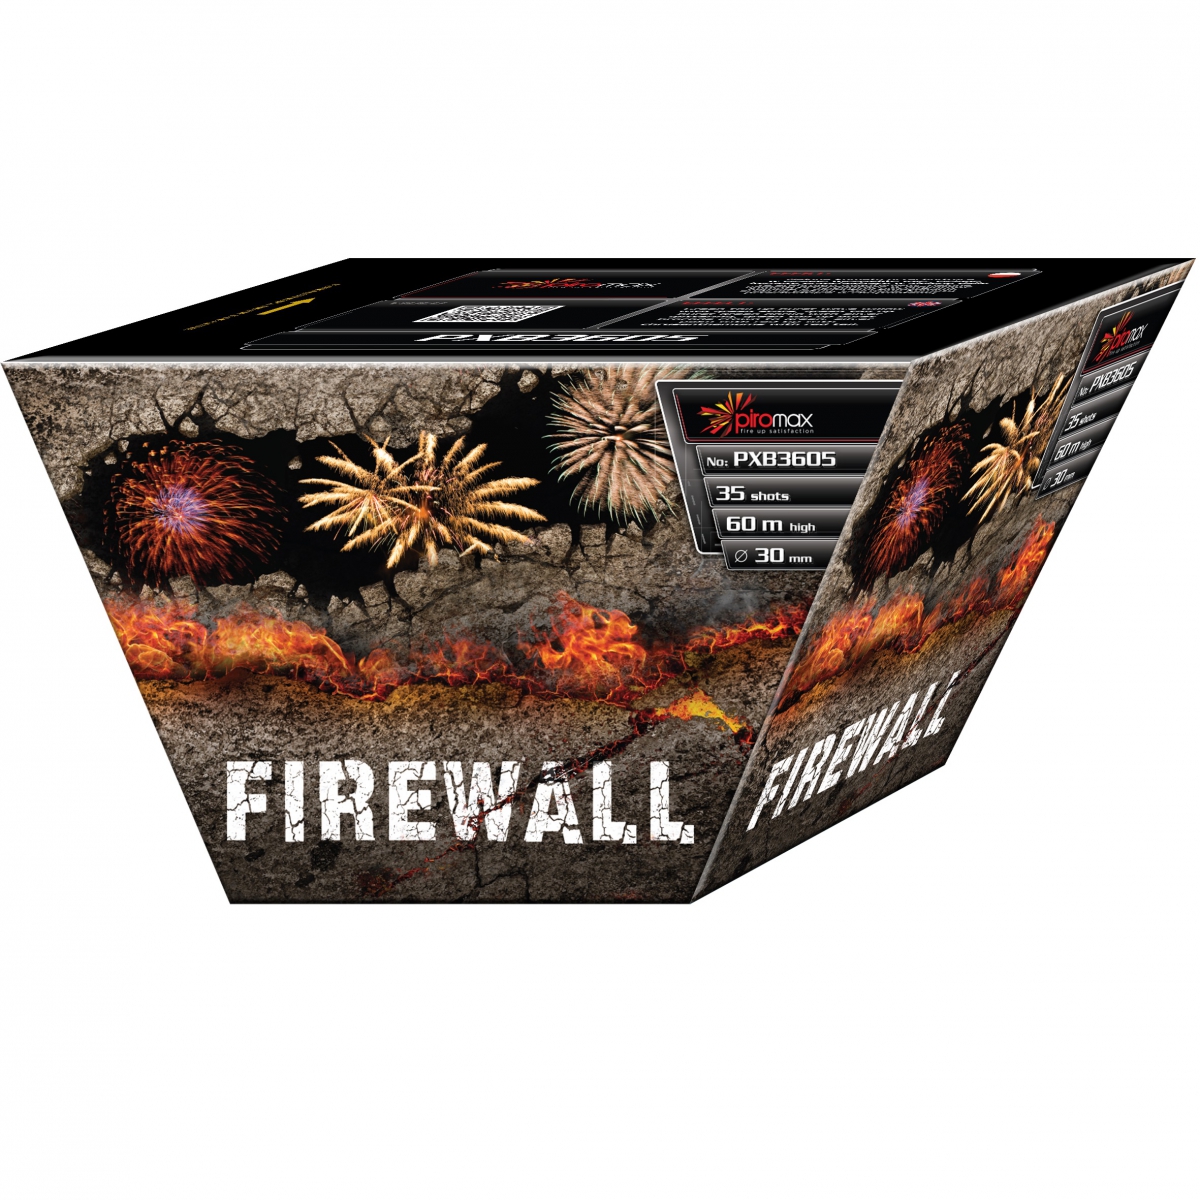 PXB3605 Firewall